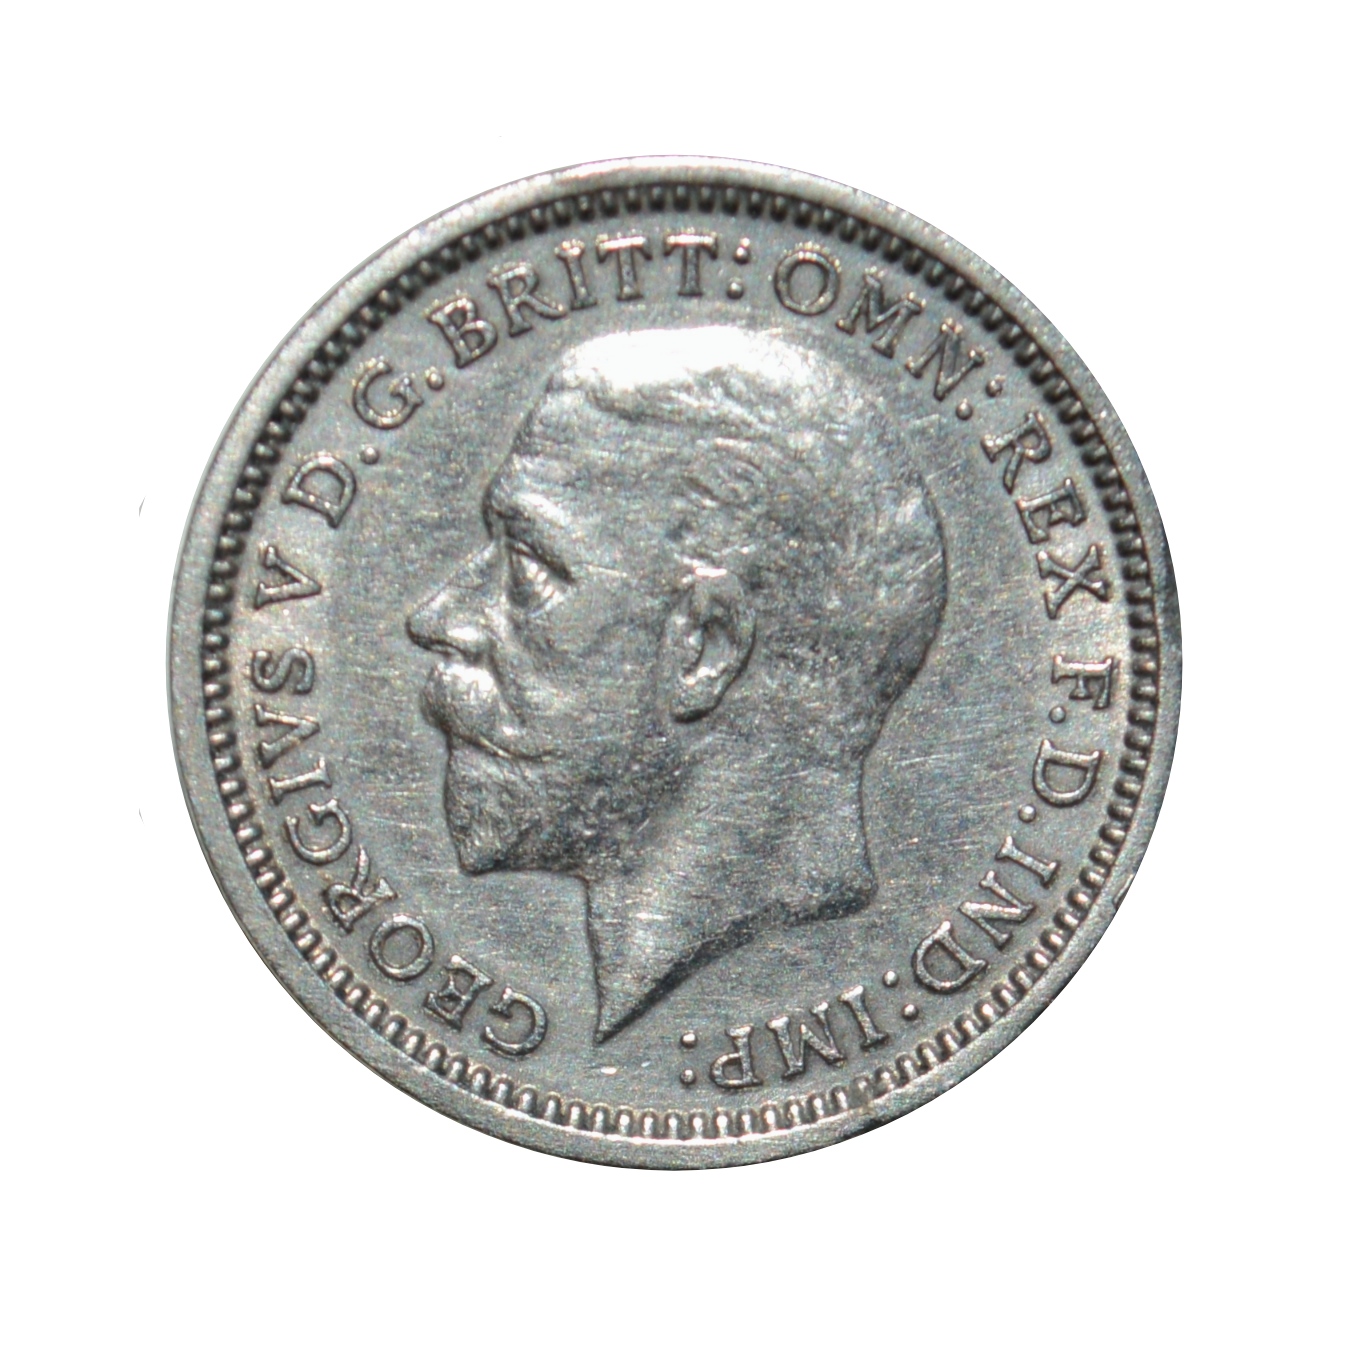 سکه تزیینی مدل کشور انگلستان 6 پنی 1936میلادی